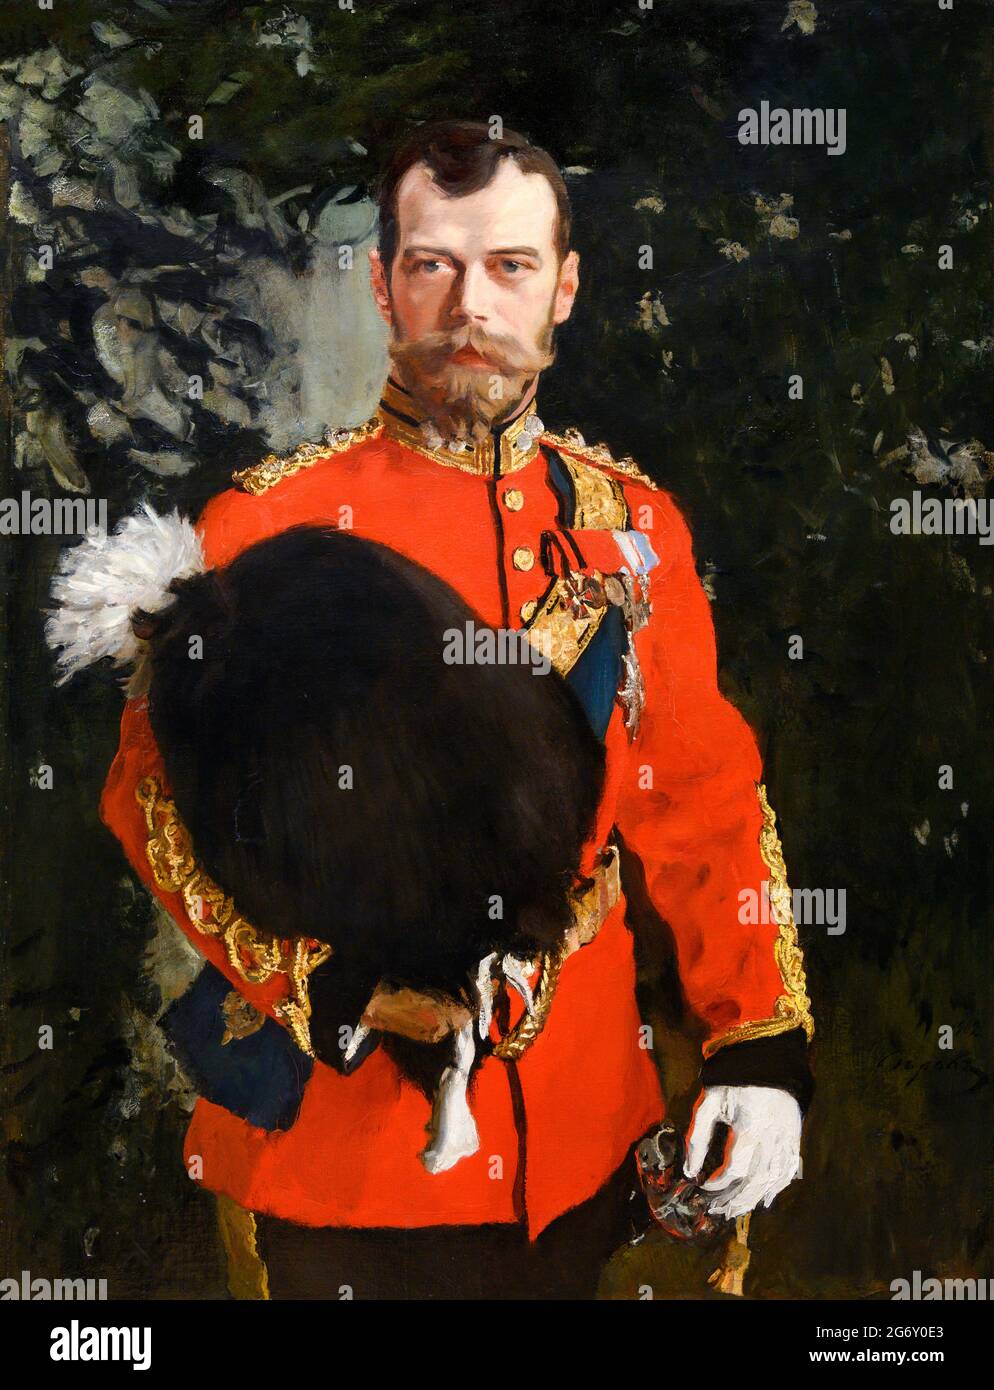 Zar Nikolaus II. Von Russland. Porträt seiner kaiserlichen Majestät Nicolai II. Alexandrvitch, Zar von ganz Russland von Valentin Serov (1865-1911), Öl auf Leinwand, 1902 Stockfoto